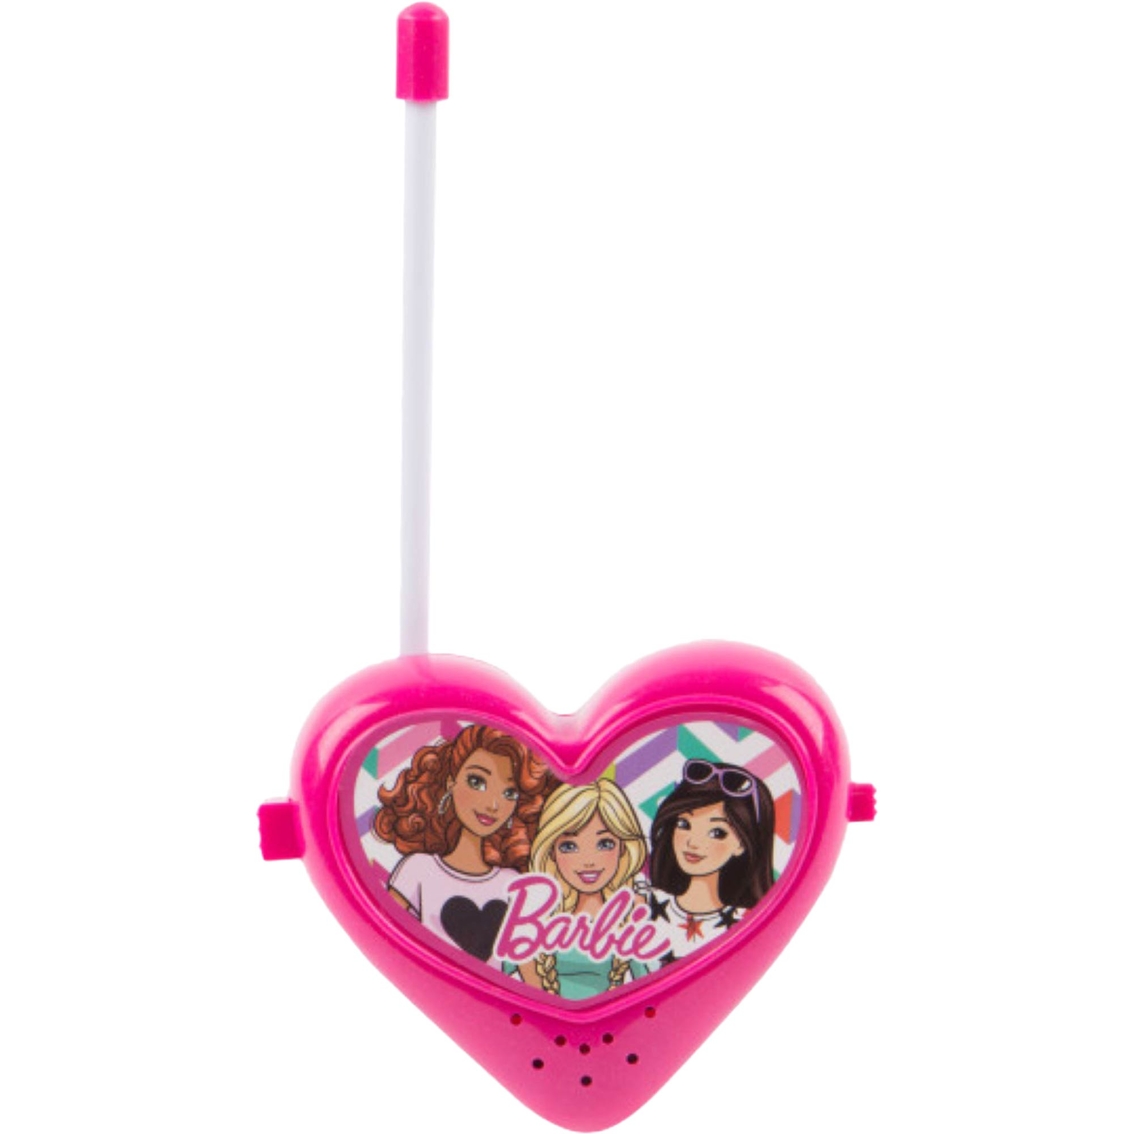 Barbie Indoor Outdoor Walkie Talkies for Kids - Image 4 of 5